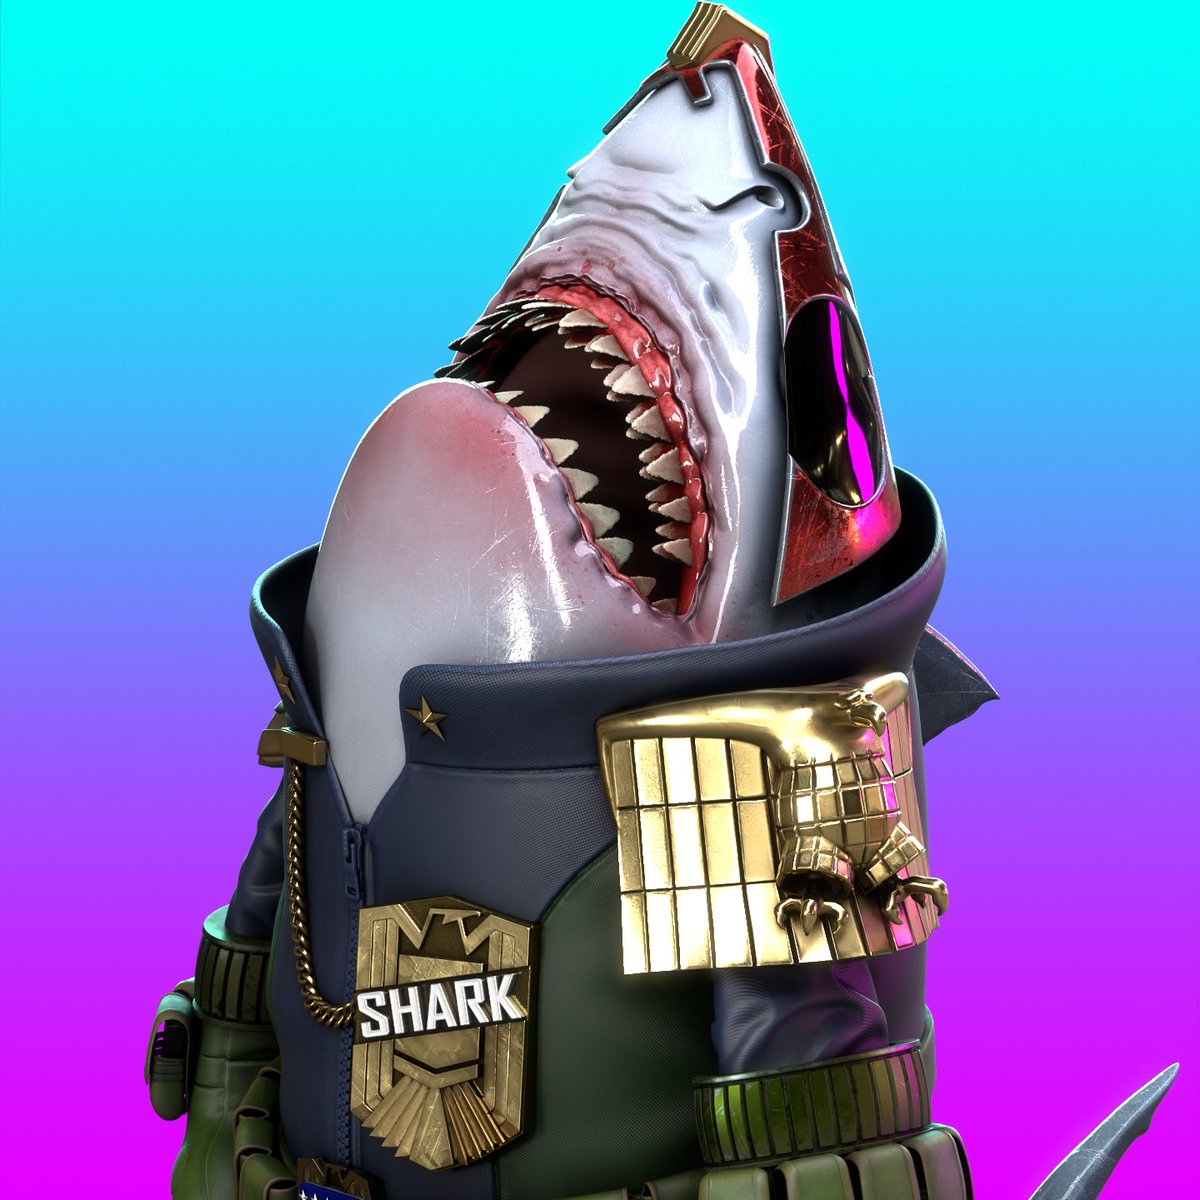 Worlds_Shark tweet picture